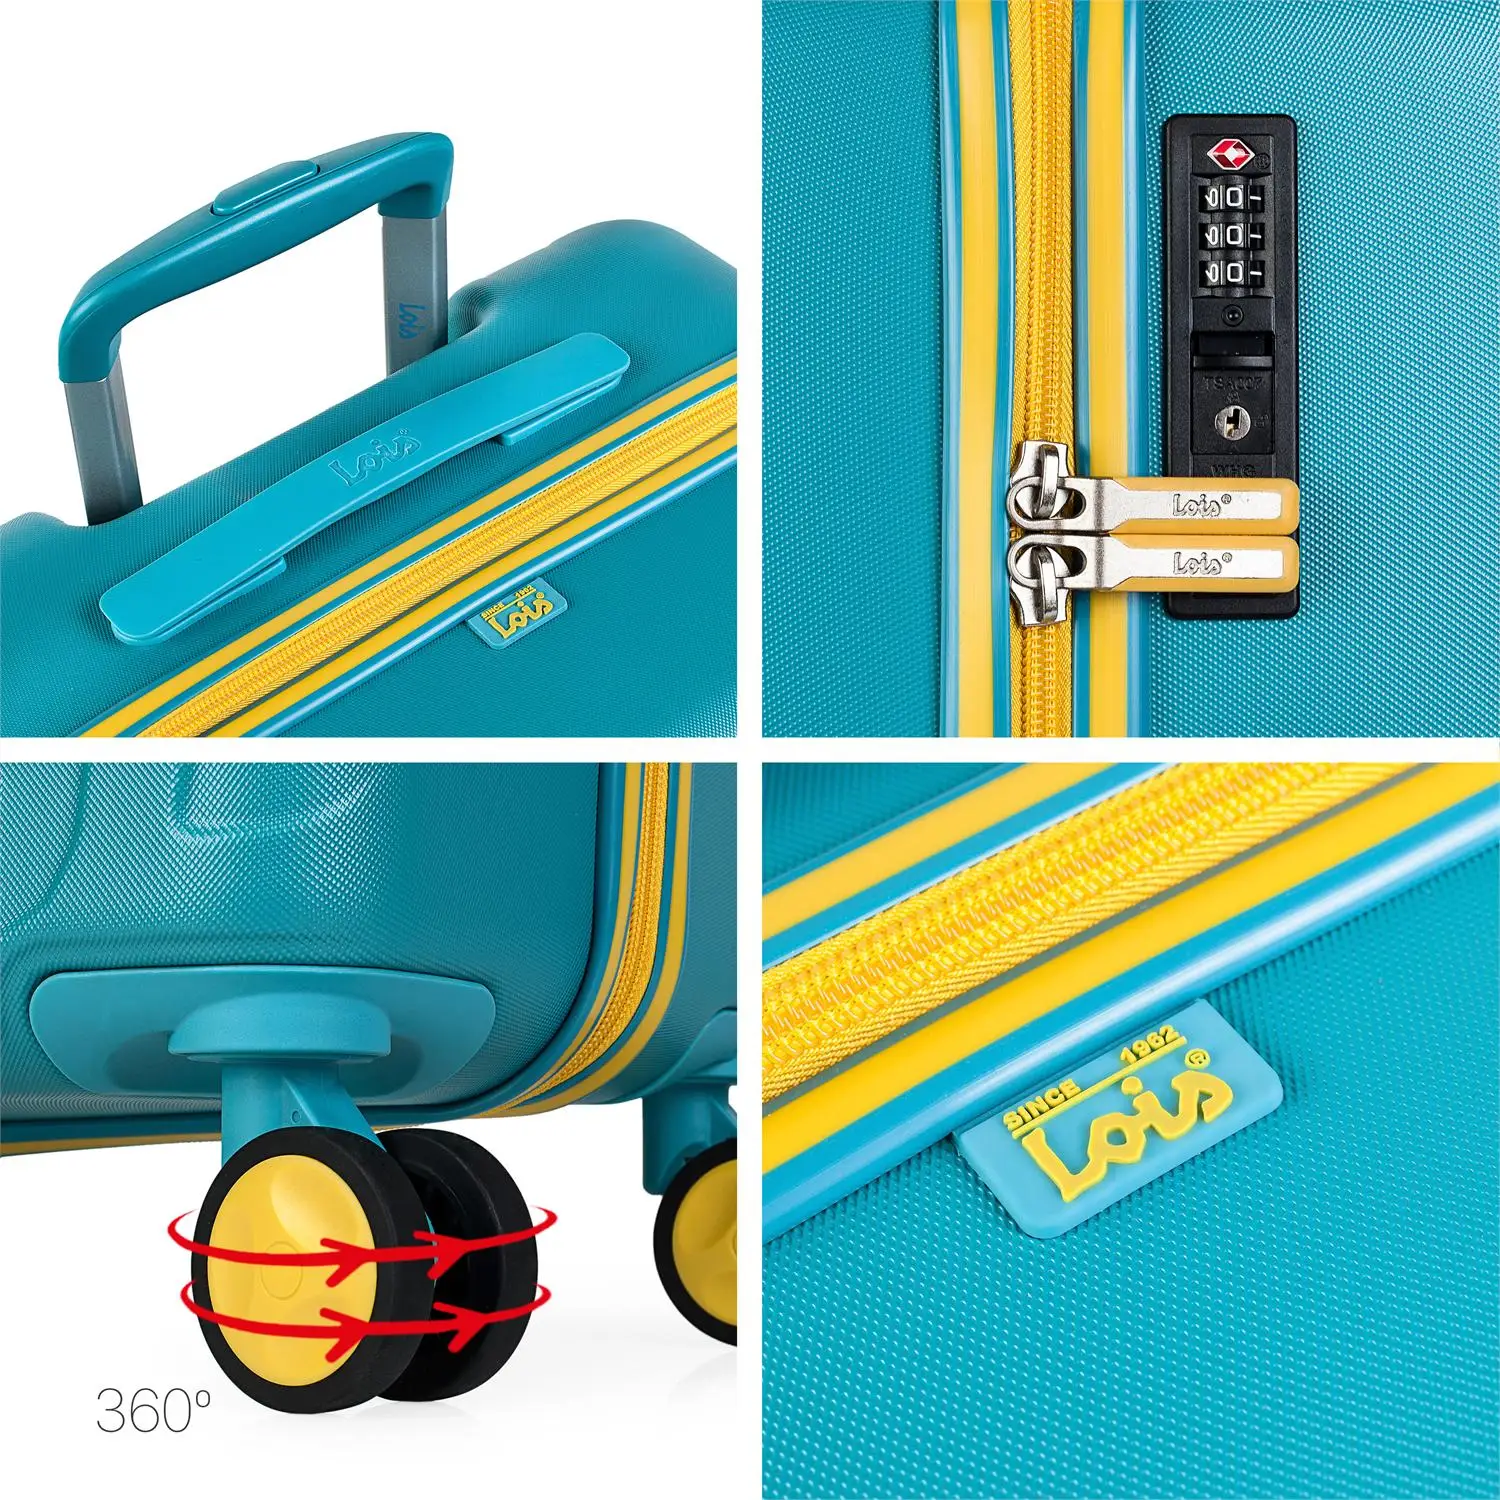 Lois модель Zion игра чемоданы ABS жесткий путешествия 4 колеса тележки. Usb порт. TSA. 171117